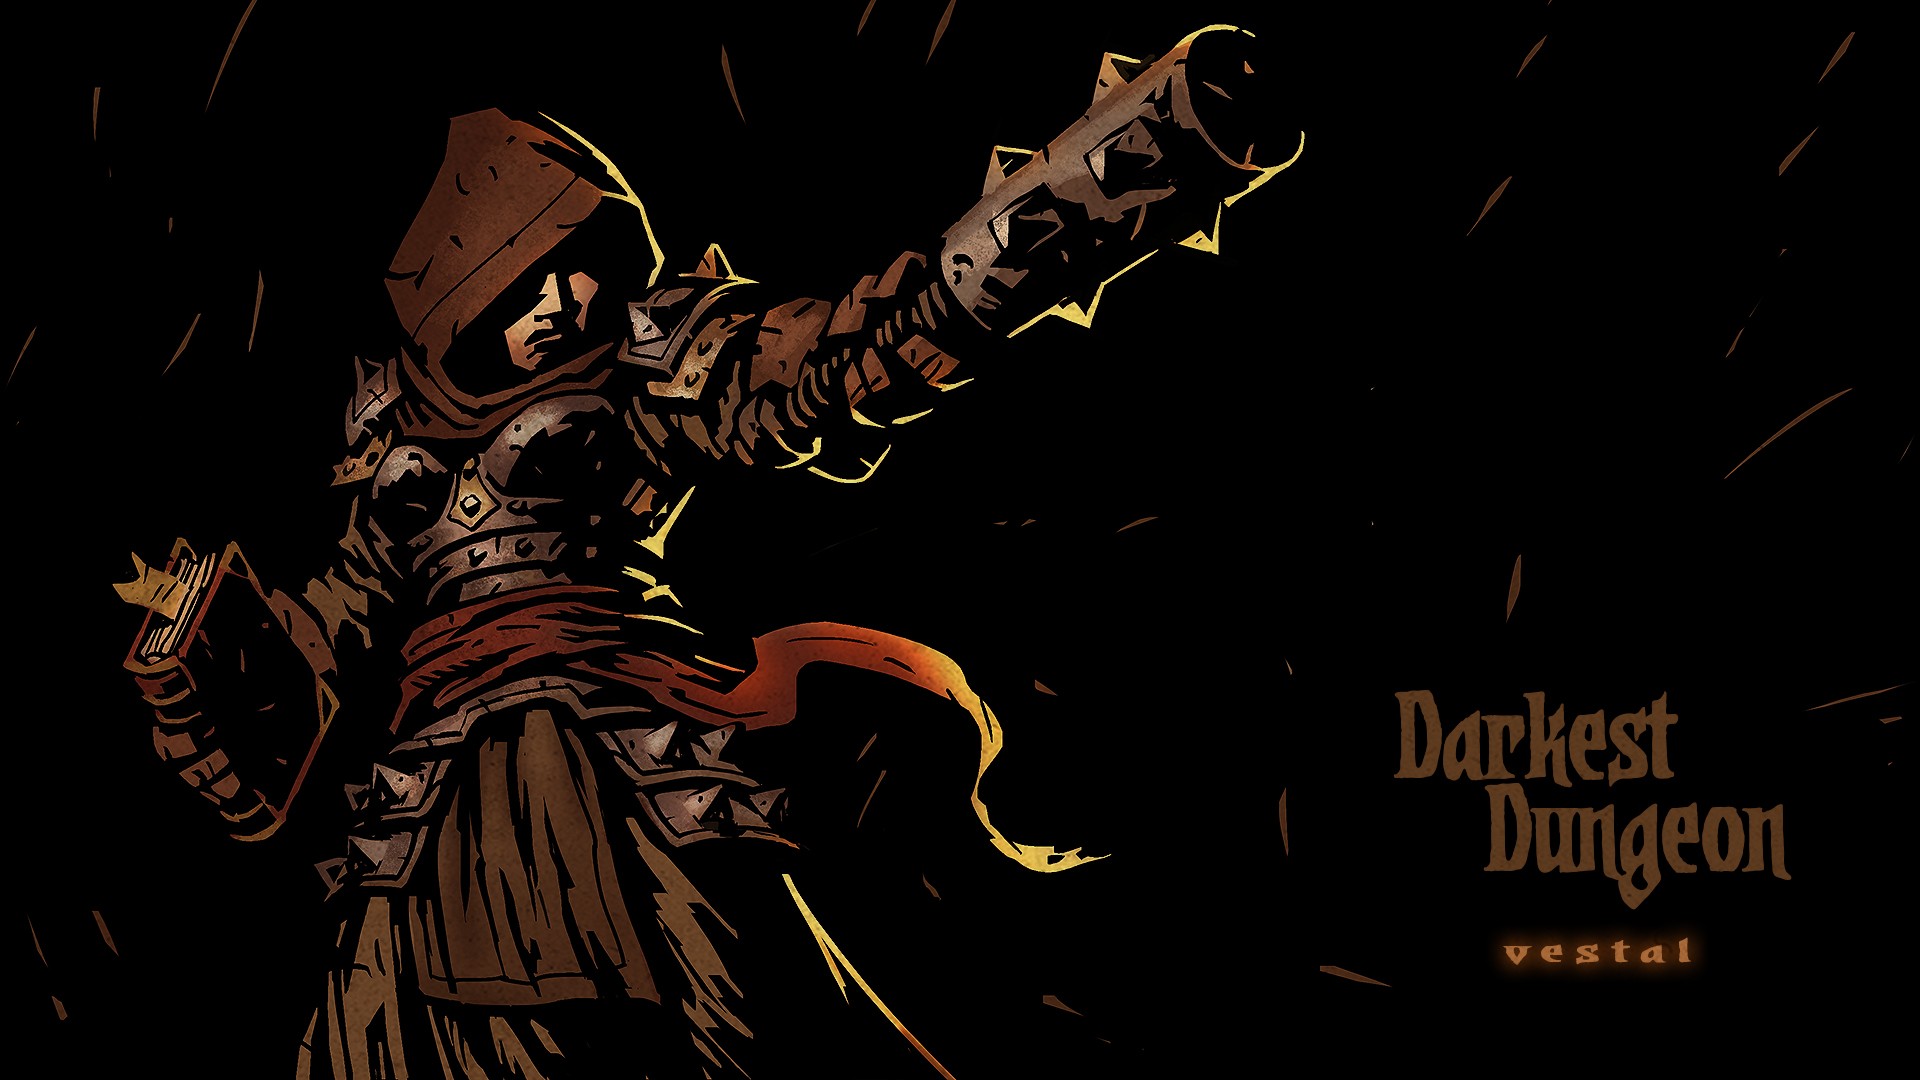 download darkest dungeon 1